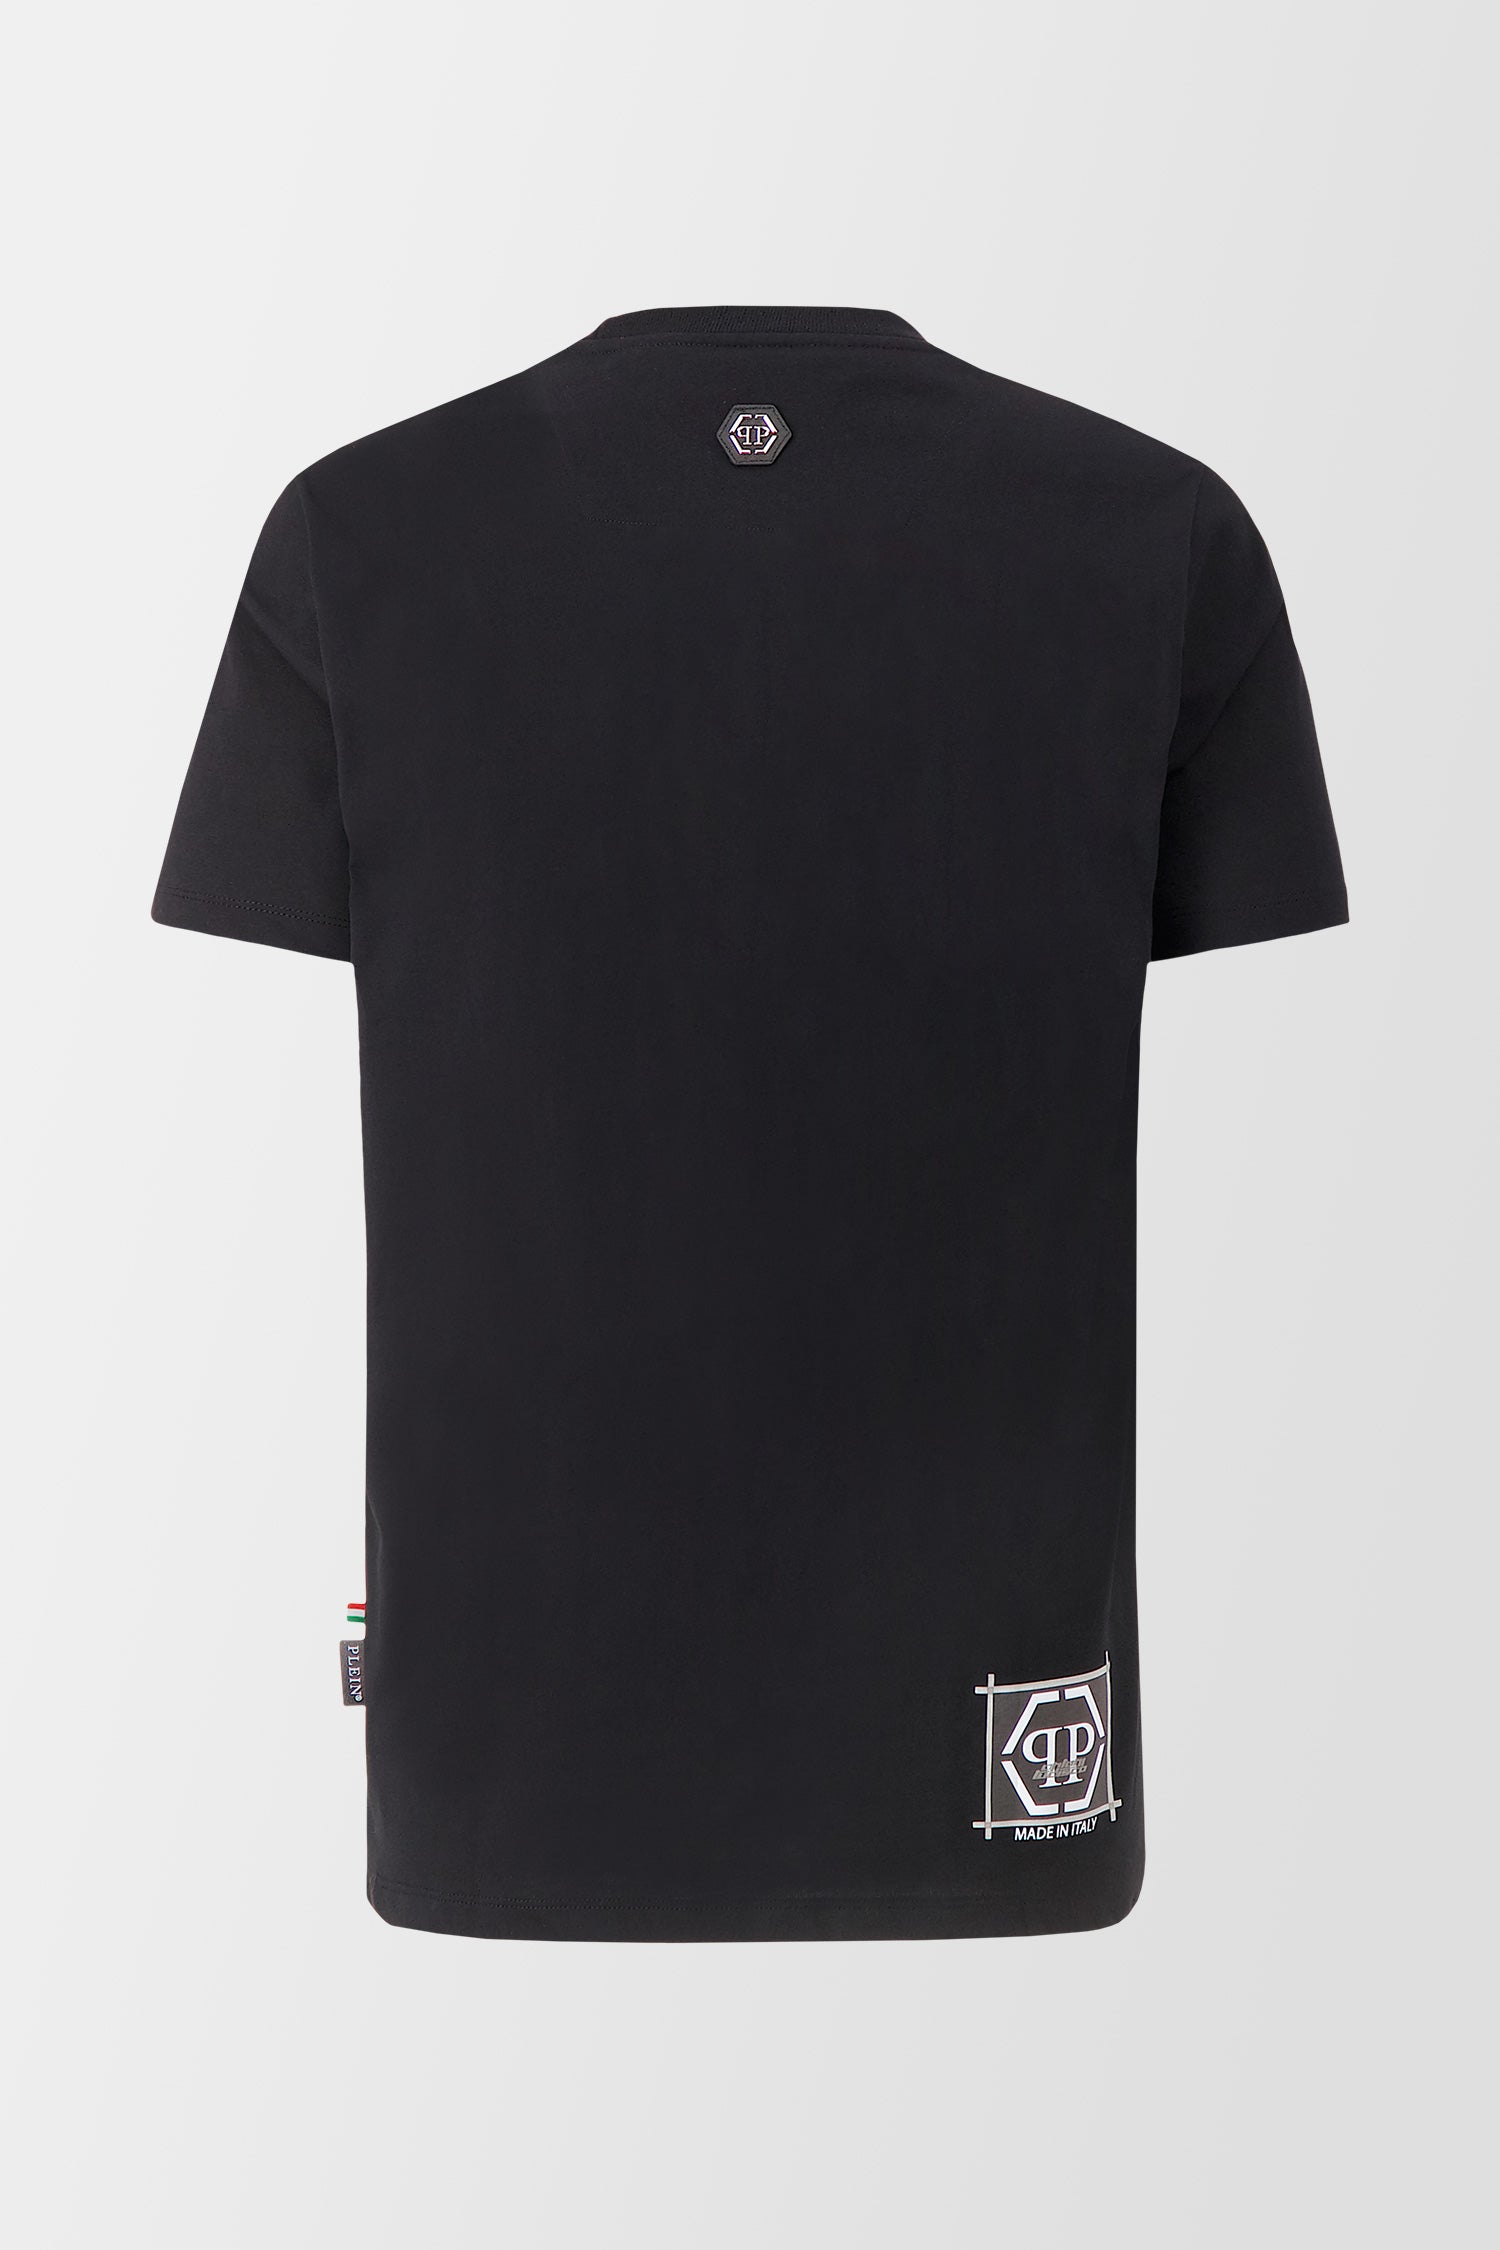 Philipp Plein Black Round Neck SS PP Limited Dollar T-shirt